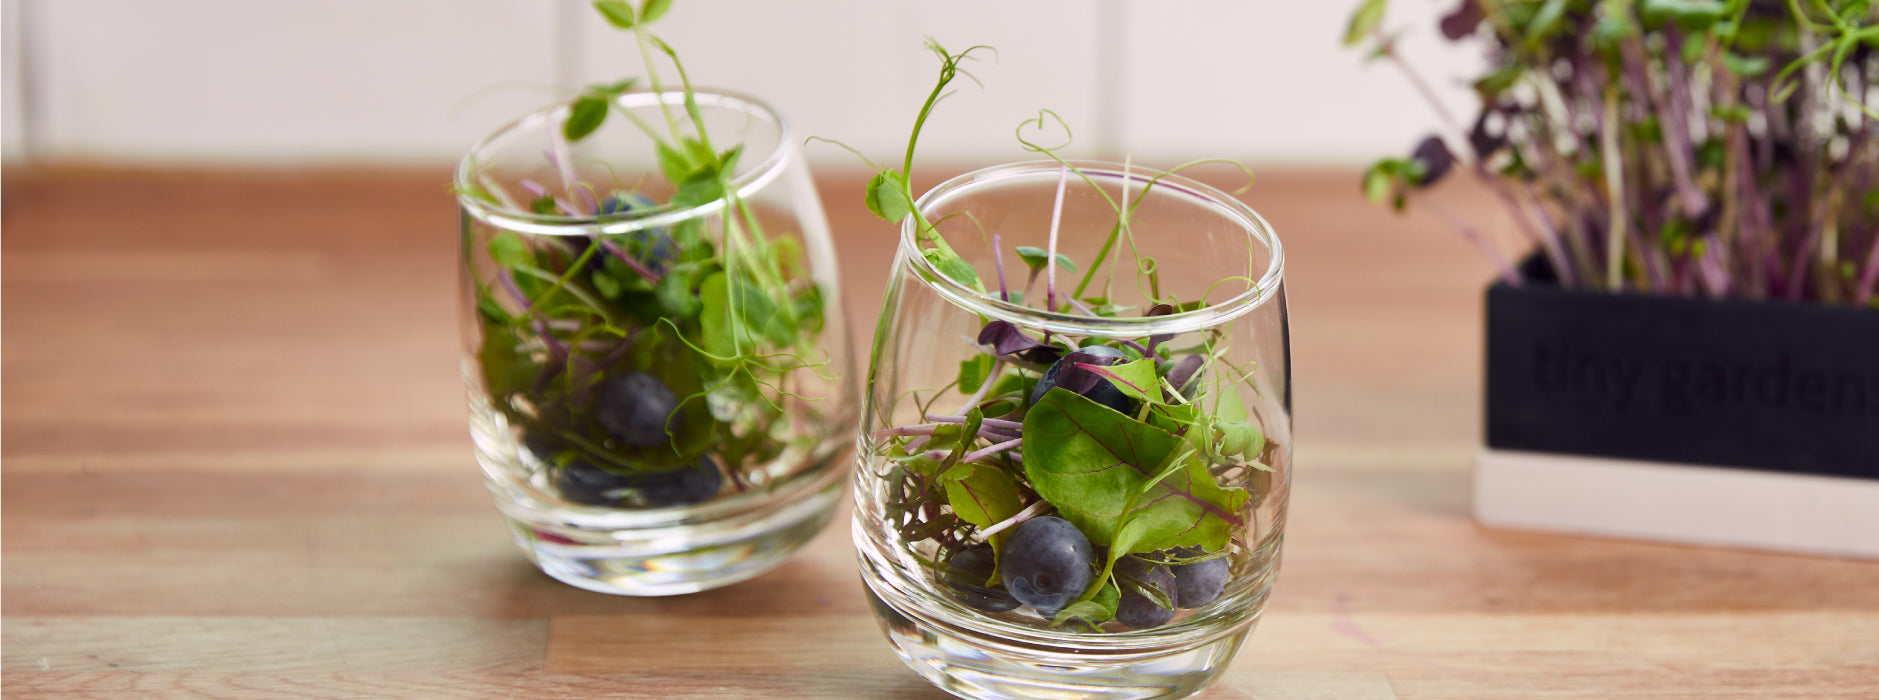 Sådan dyrker du spirer i glas